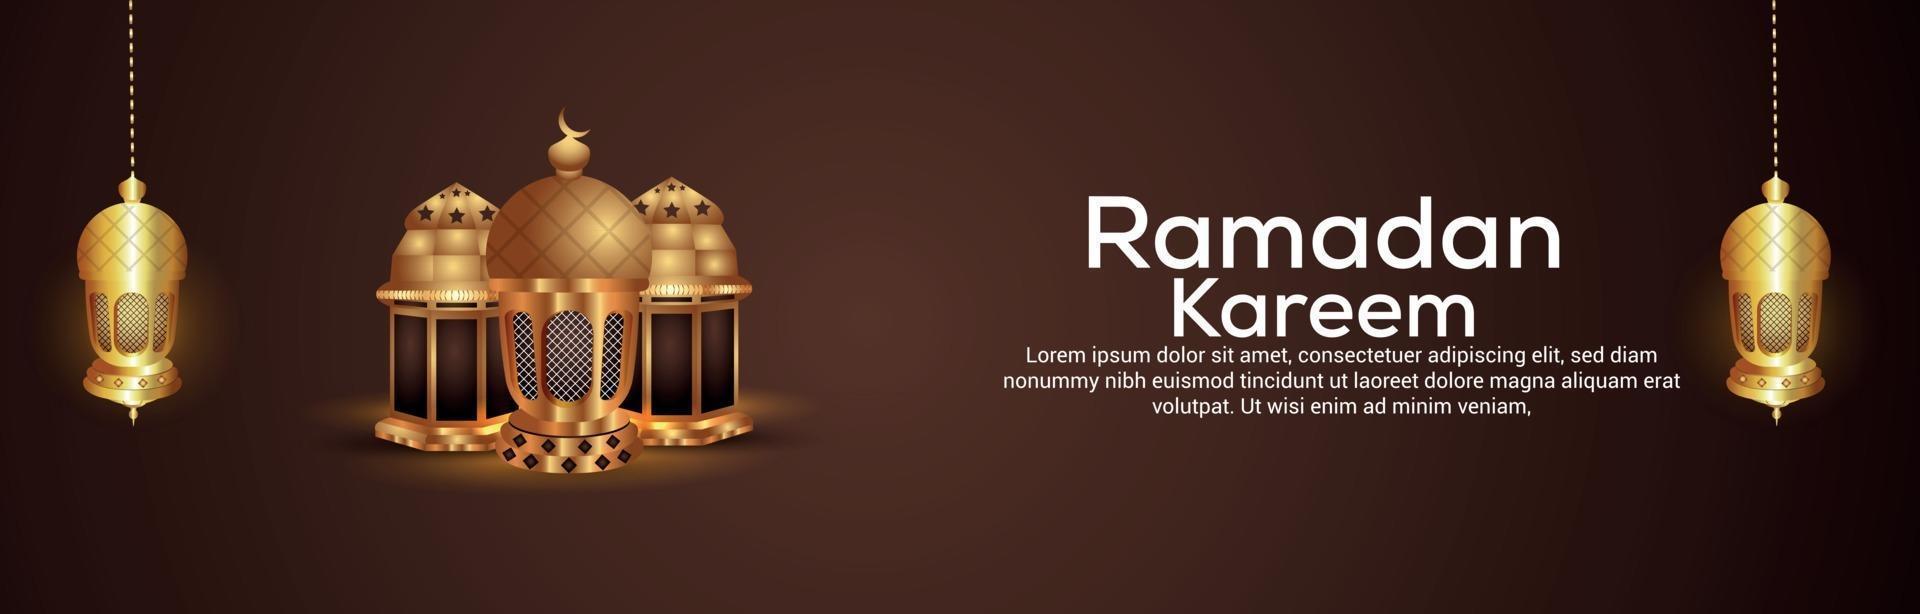 ilustração em vetor criativo do banner de celebração do ramadan kareem com lanterna dourada